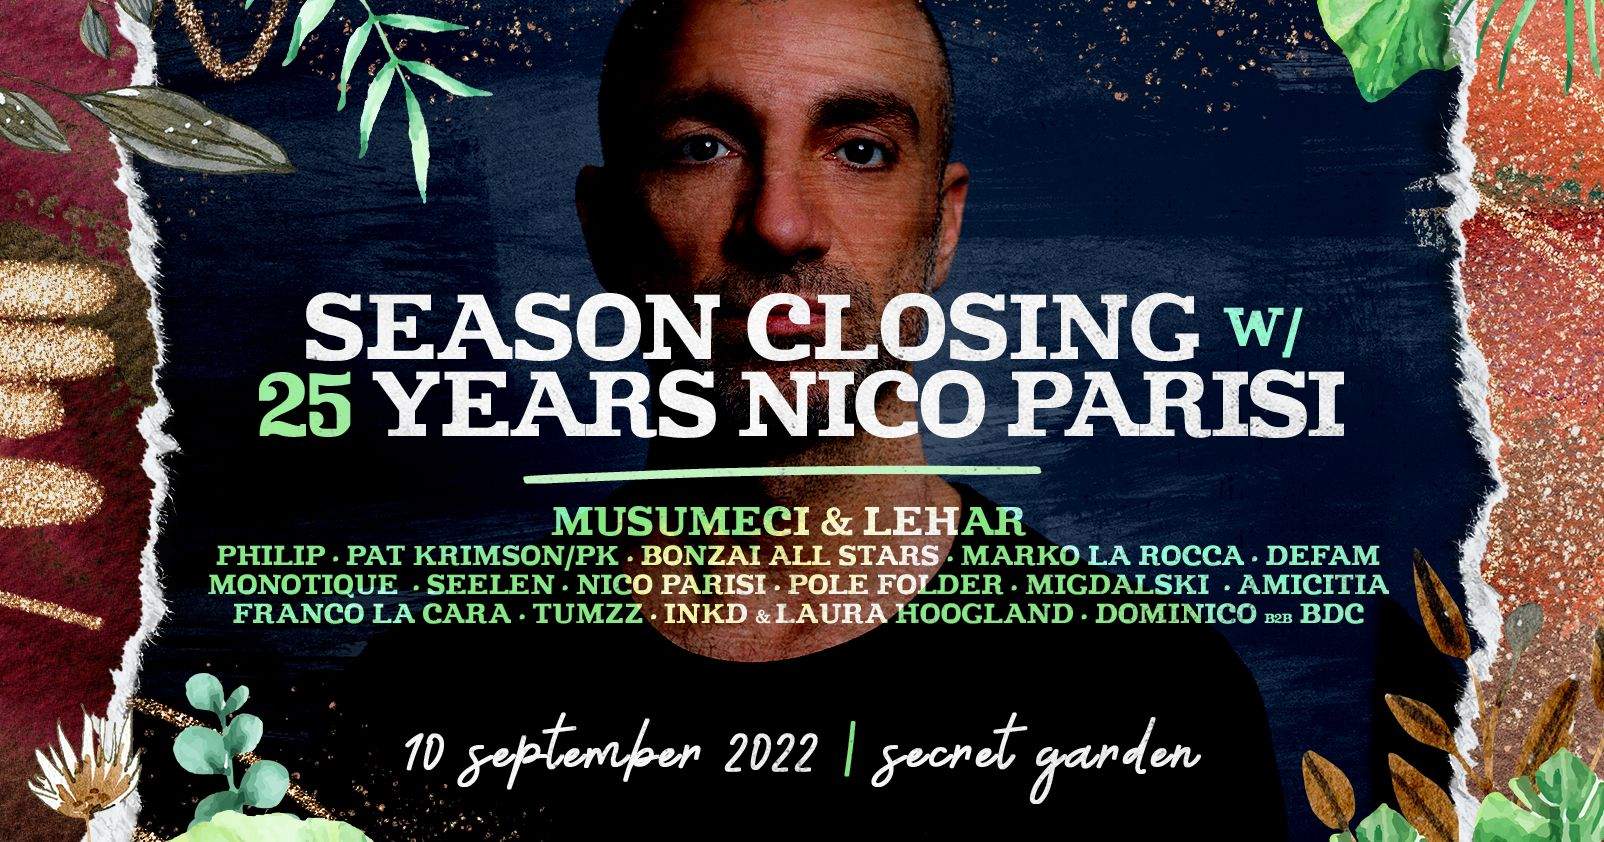 The Legendary Season Closing - 25 YEARS NICO PARISI - Página frontal